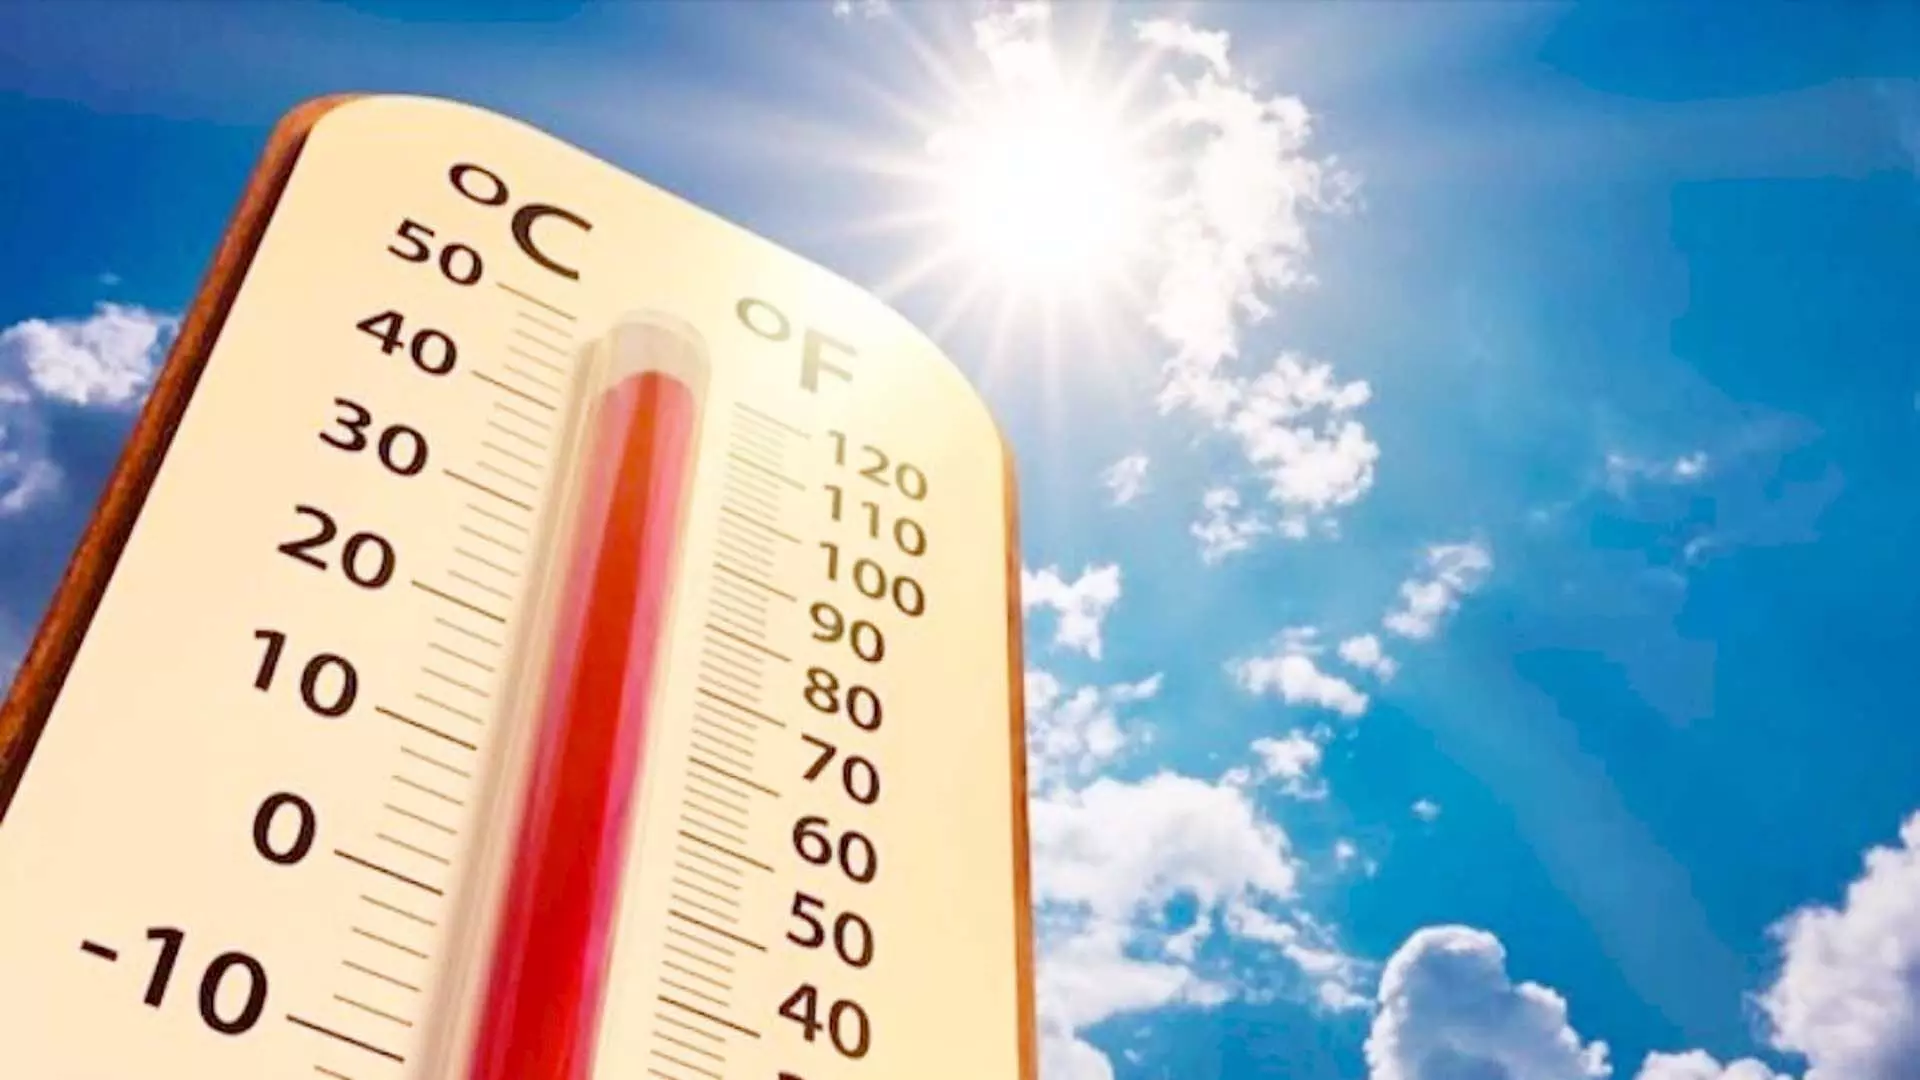 तेज धूप तापमान 45 डिग्री के पार, गुना प्रदेश का सबसे गर्म शहर